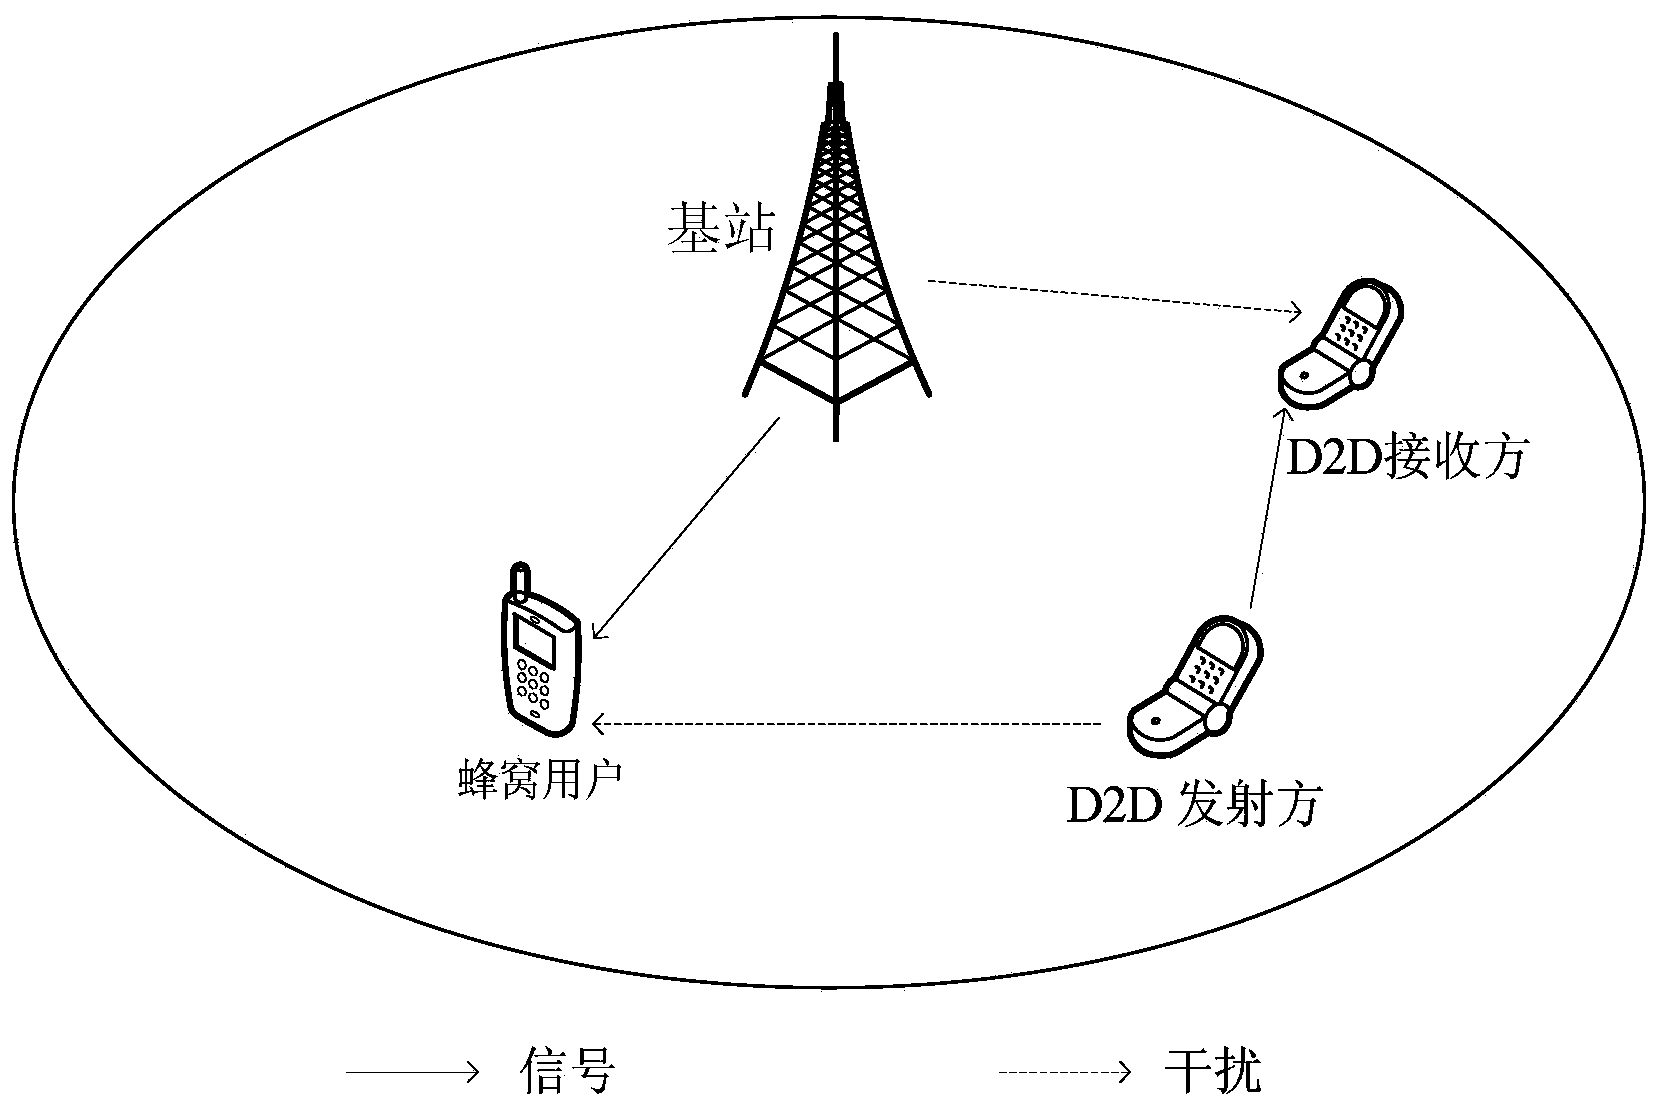 D2D user resource distribution method based on multicarrier communication